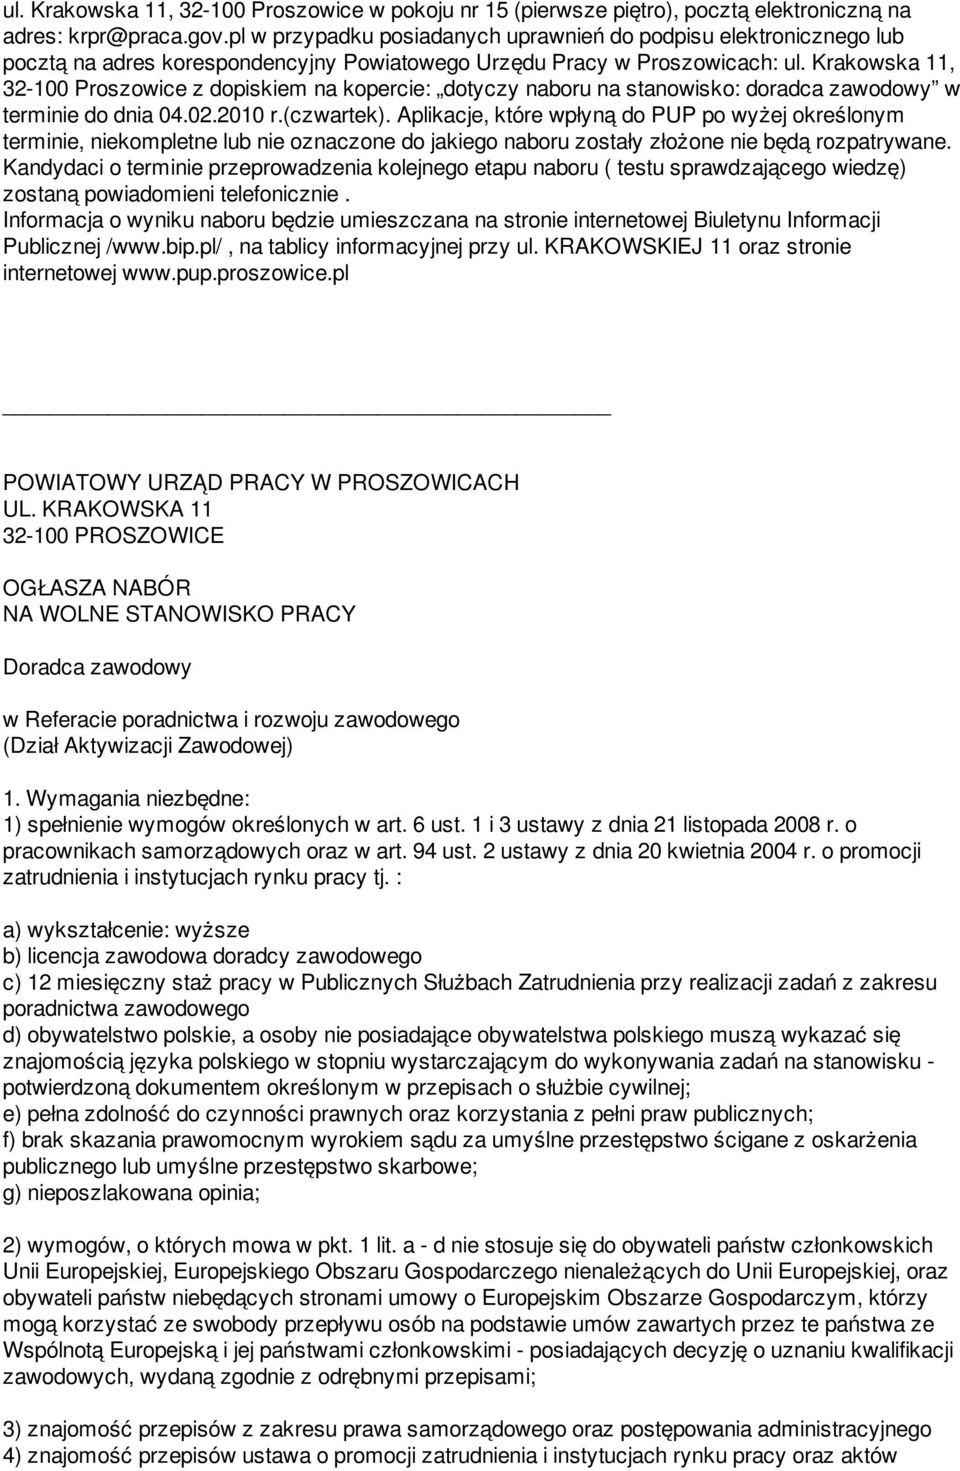 Krakowska 11, 32-100 Proszowice z dopiskiem na kopercie: dotyczy naboru na stanowisko: doradca zawodowy w terminie do dnia 04.02.2010 r.(czwartek).